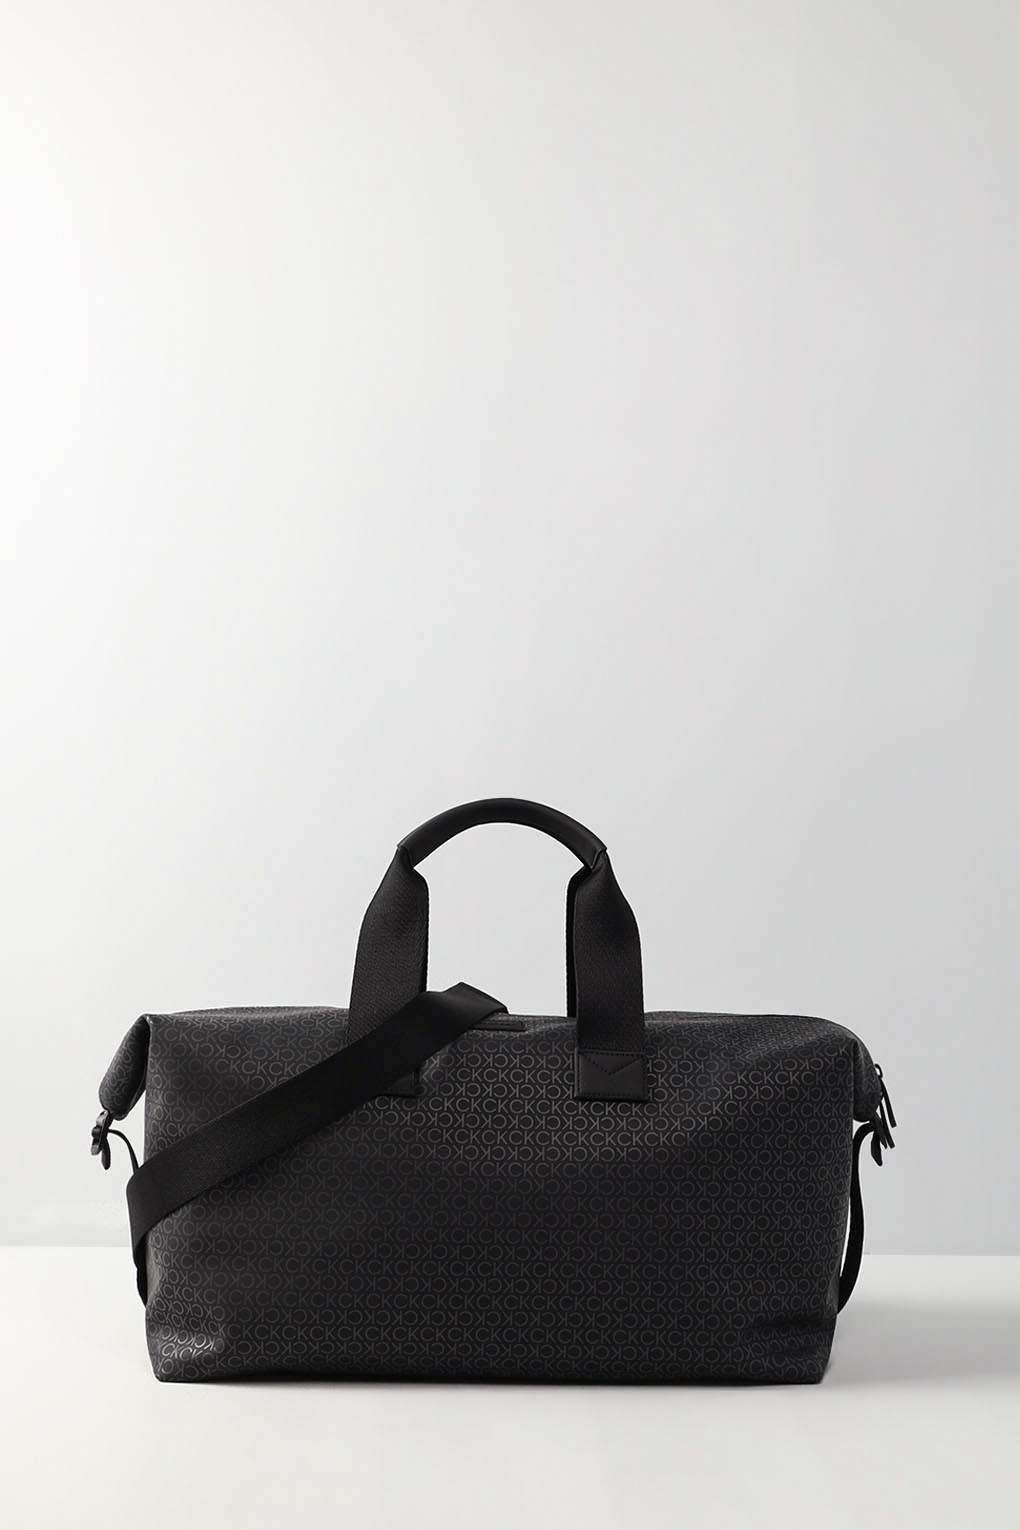 Дорожная сумка мужская Calvin Klein K50K509595 черная, 25x48x25 см